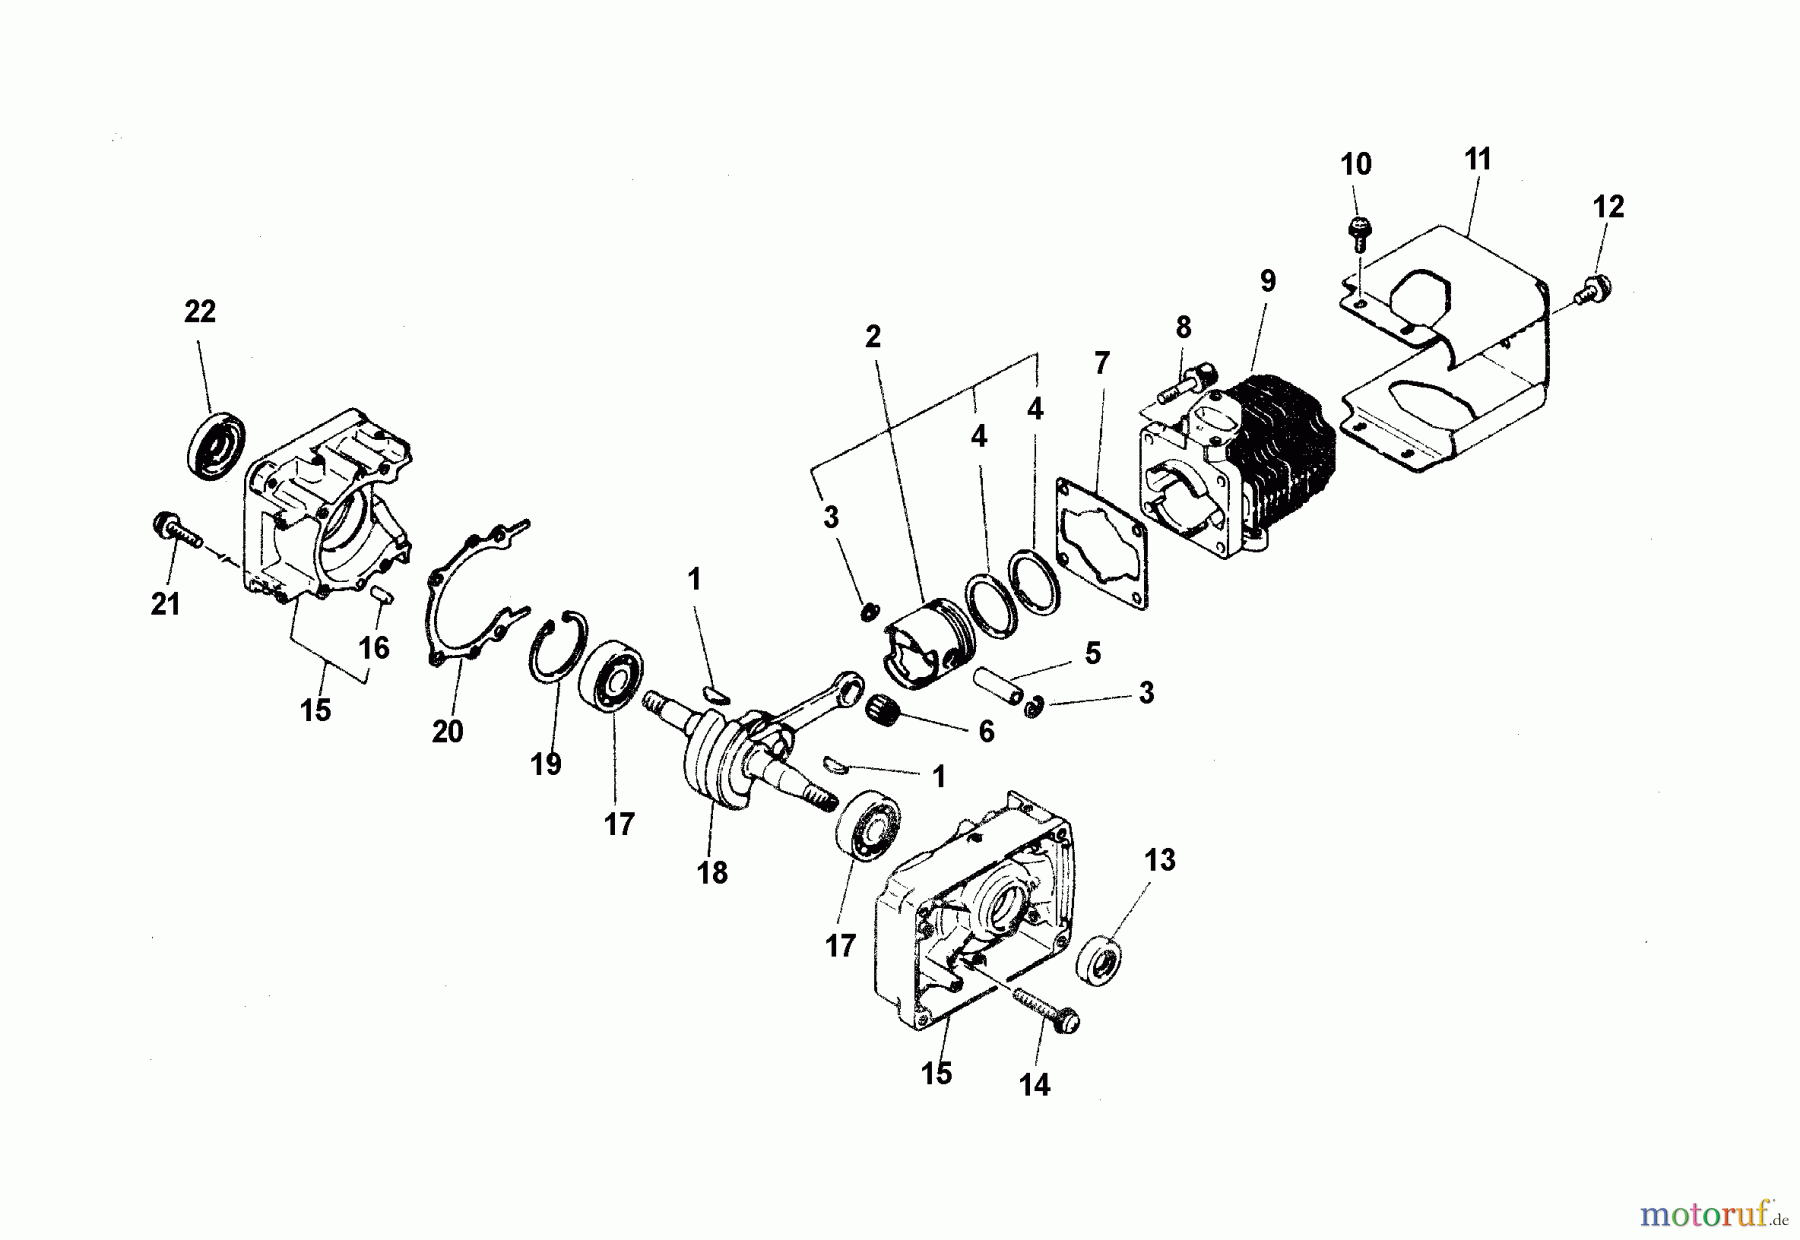  Echo Bläser / Sauger / Häcksler / Mulchgeräte	 PB-210E - Echo Hand Held Blower (Type 1E) Engine, Cover